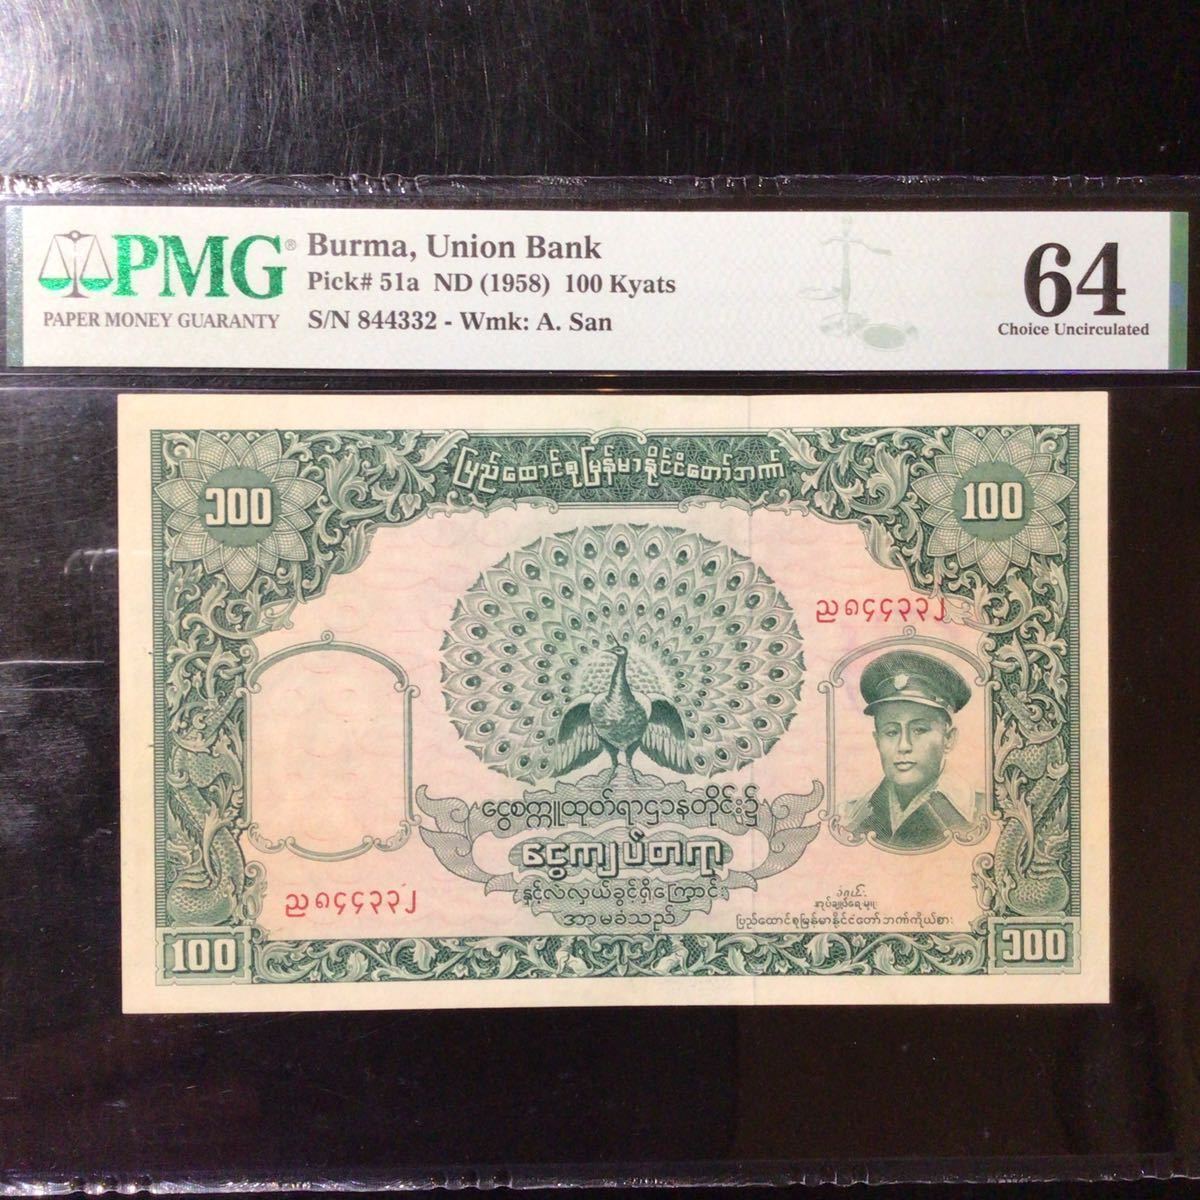 【超特価sale開催！】 World 64』 Uncirculated Choice Grading Kyats【1958】『PMG 100 Bank》 BURMA《Union Grading Banknote 世界